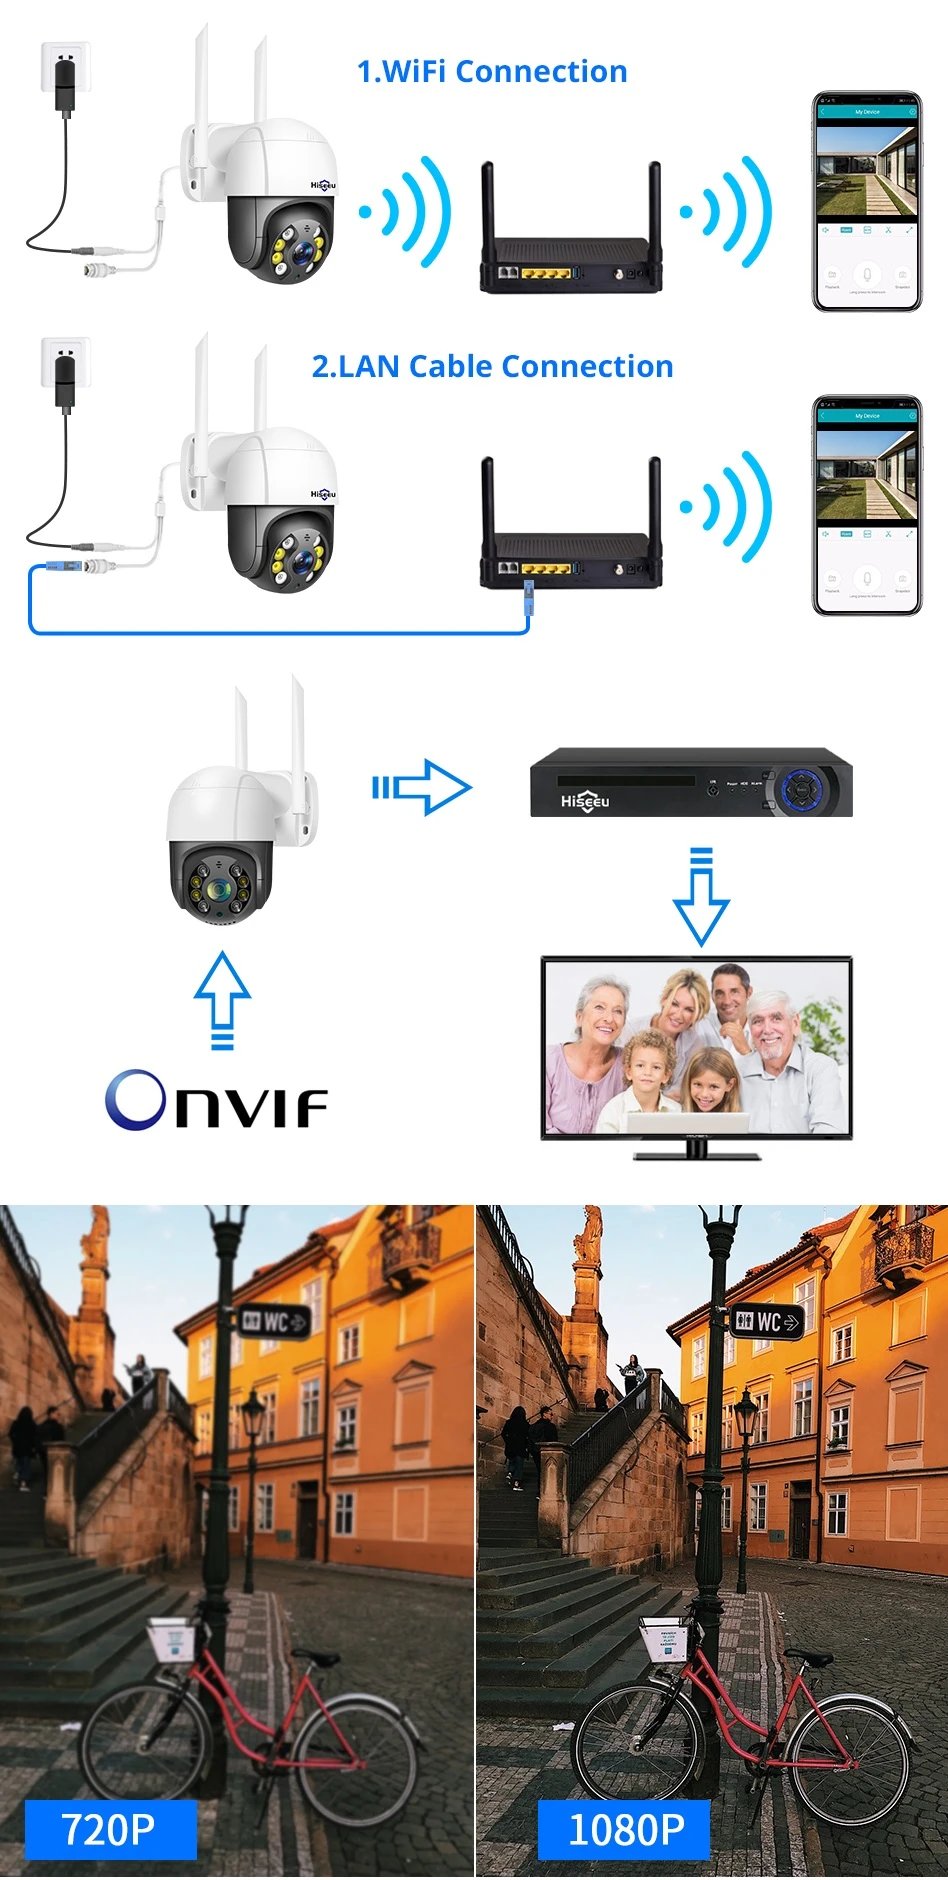 Hiseeu 1080P 2MP Външна Безжична WiFi PTZ IP Камера Двупосочна Аудио Мрежа